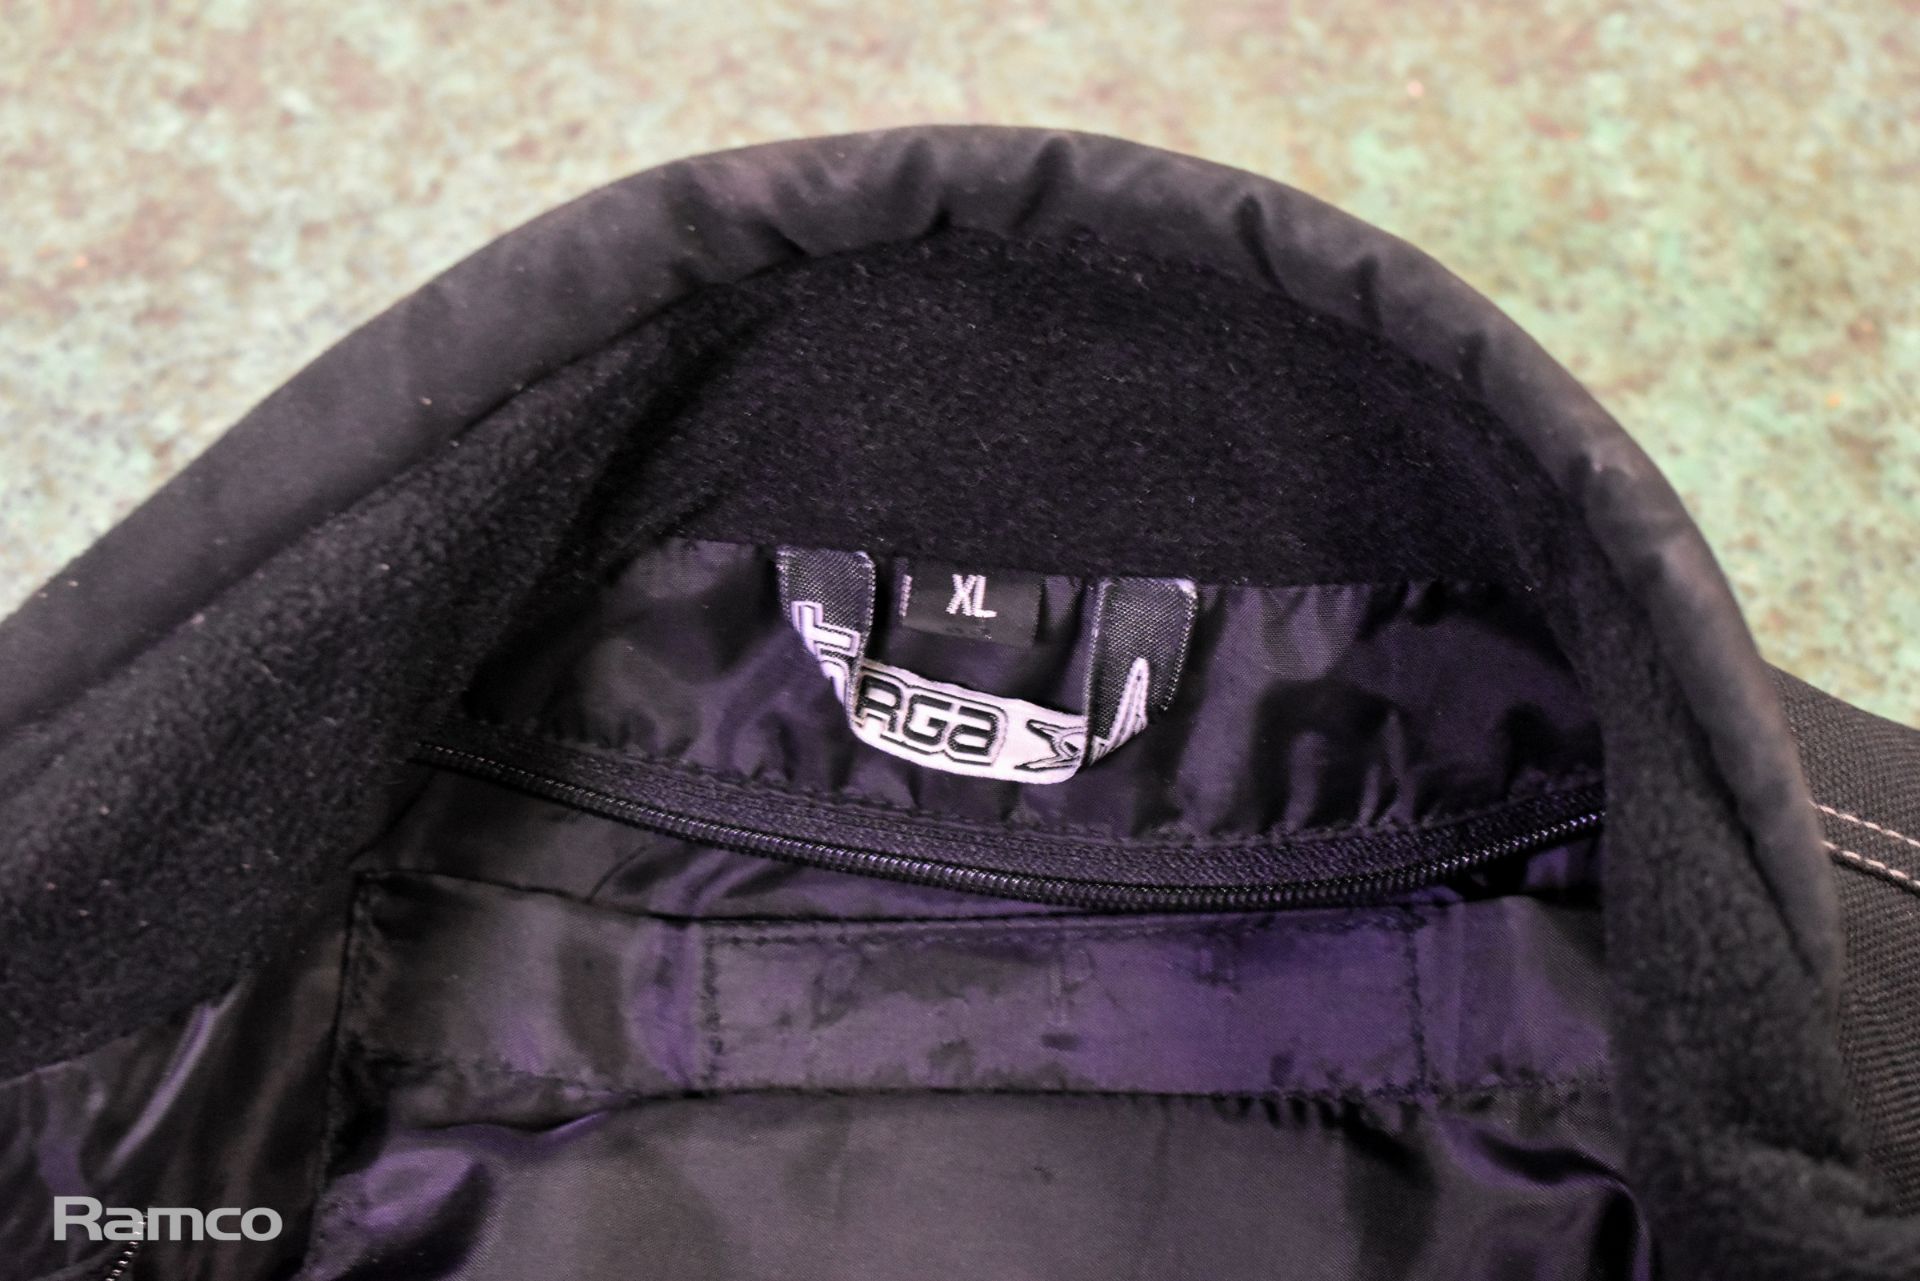 Buffalo black textile motorcycle jacket - Size: XS, Targa black and red textile motorcycle jacket - Image 5 of 15